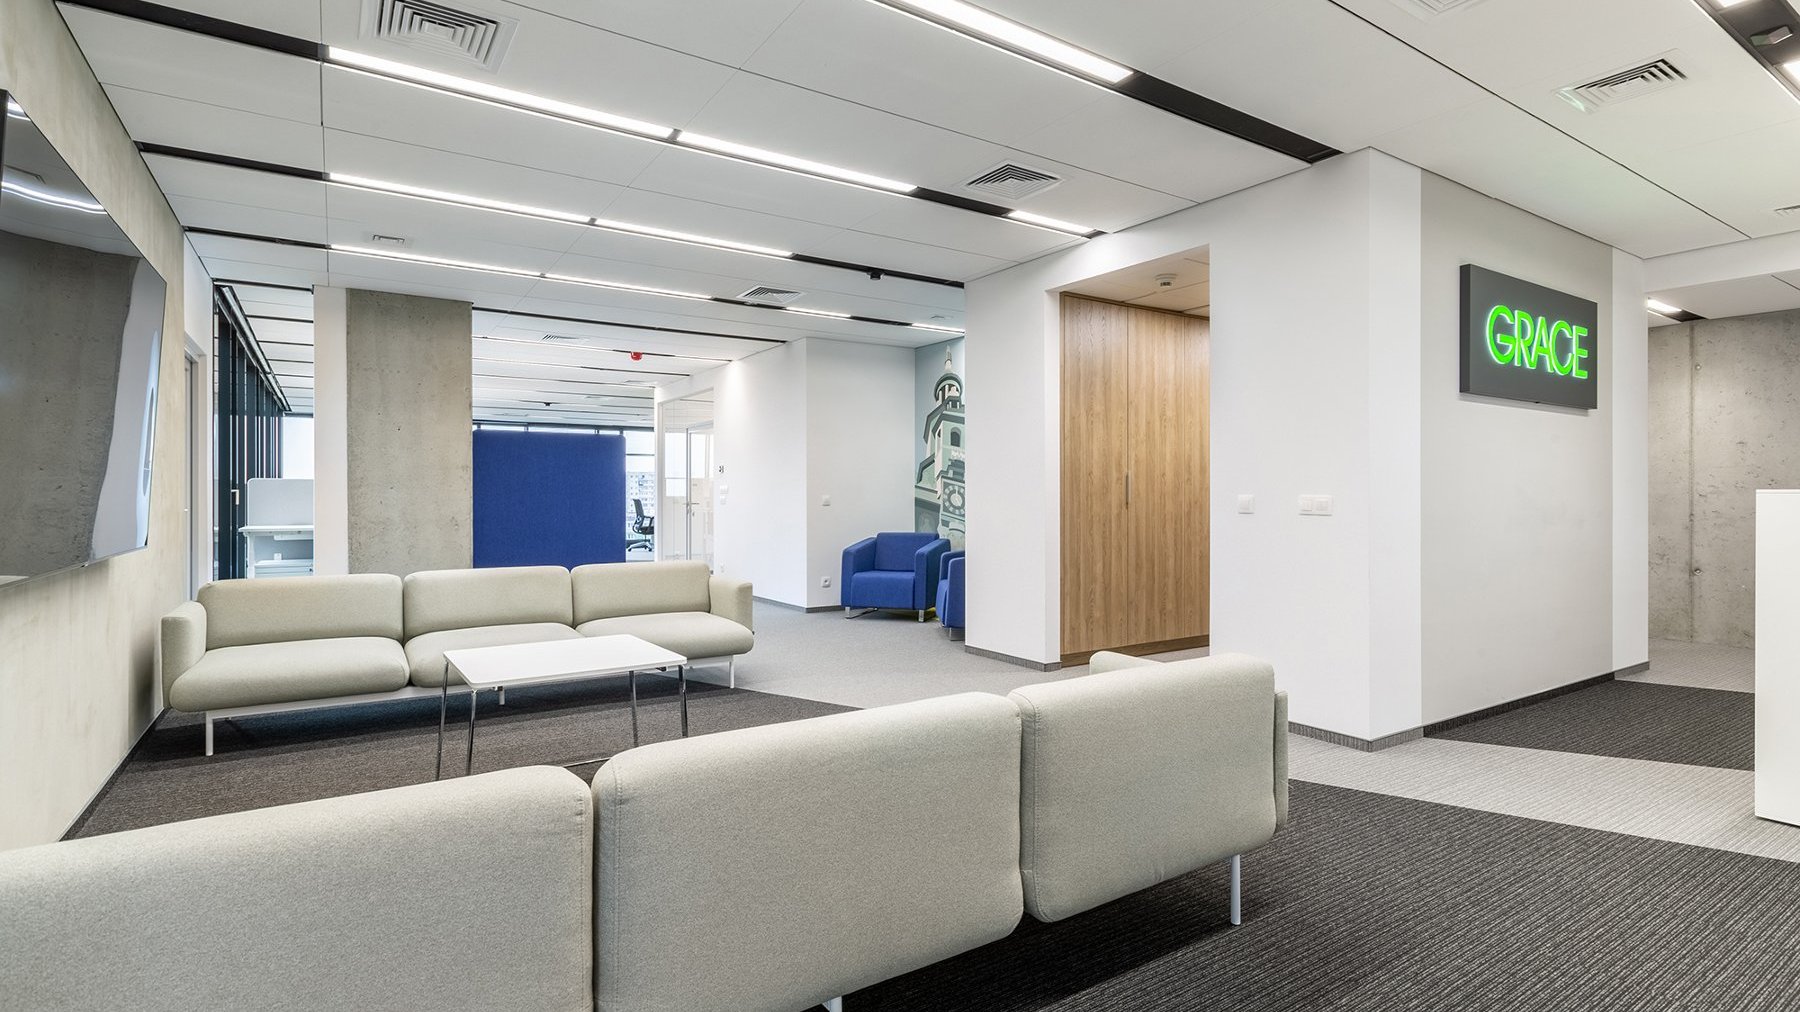 Zdjęcie przedstawia nowoczesną przestrzeń biurową. Po prawej stronie na ścianie wisi neonowe logo firmy Grace. Po lewej naprzeciwko siebie stoją dwie materiałowe kanapy. W tle widać pomieszczenia biurowe.